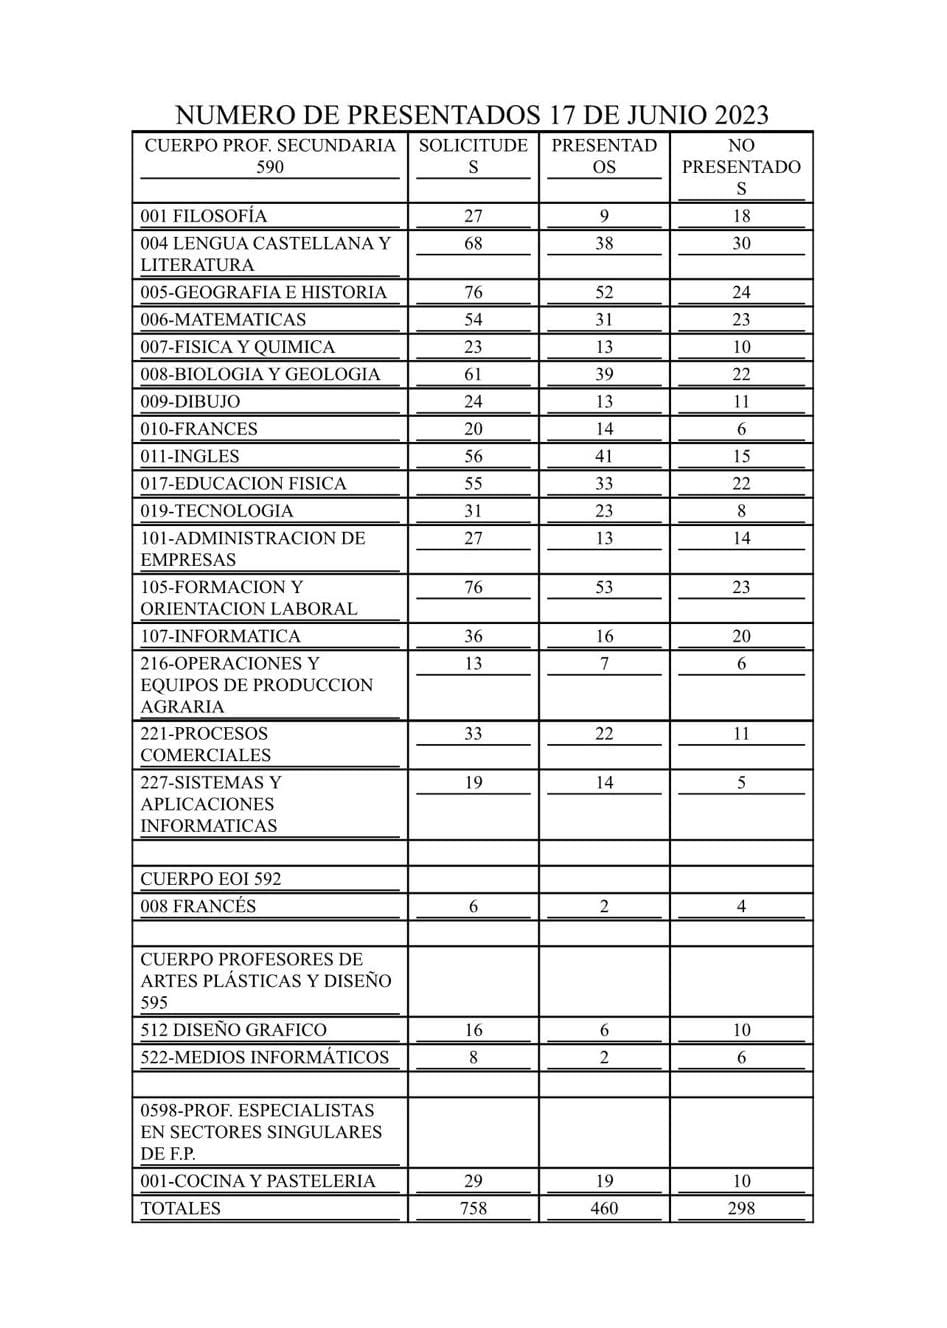 numero-presentados-oposiciones-docentes-junio-2023